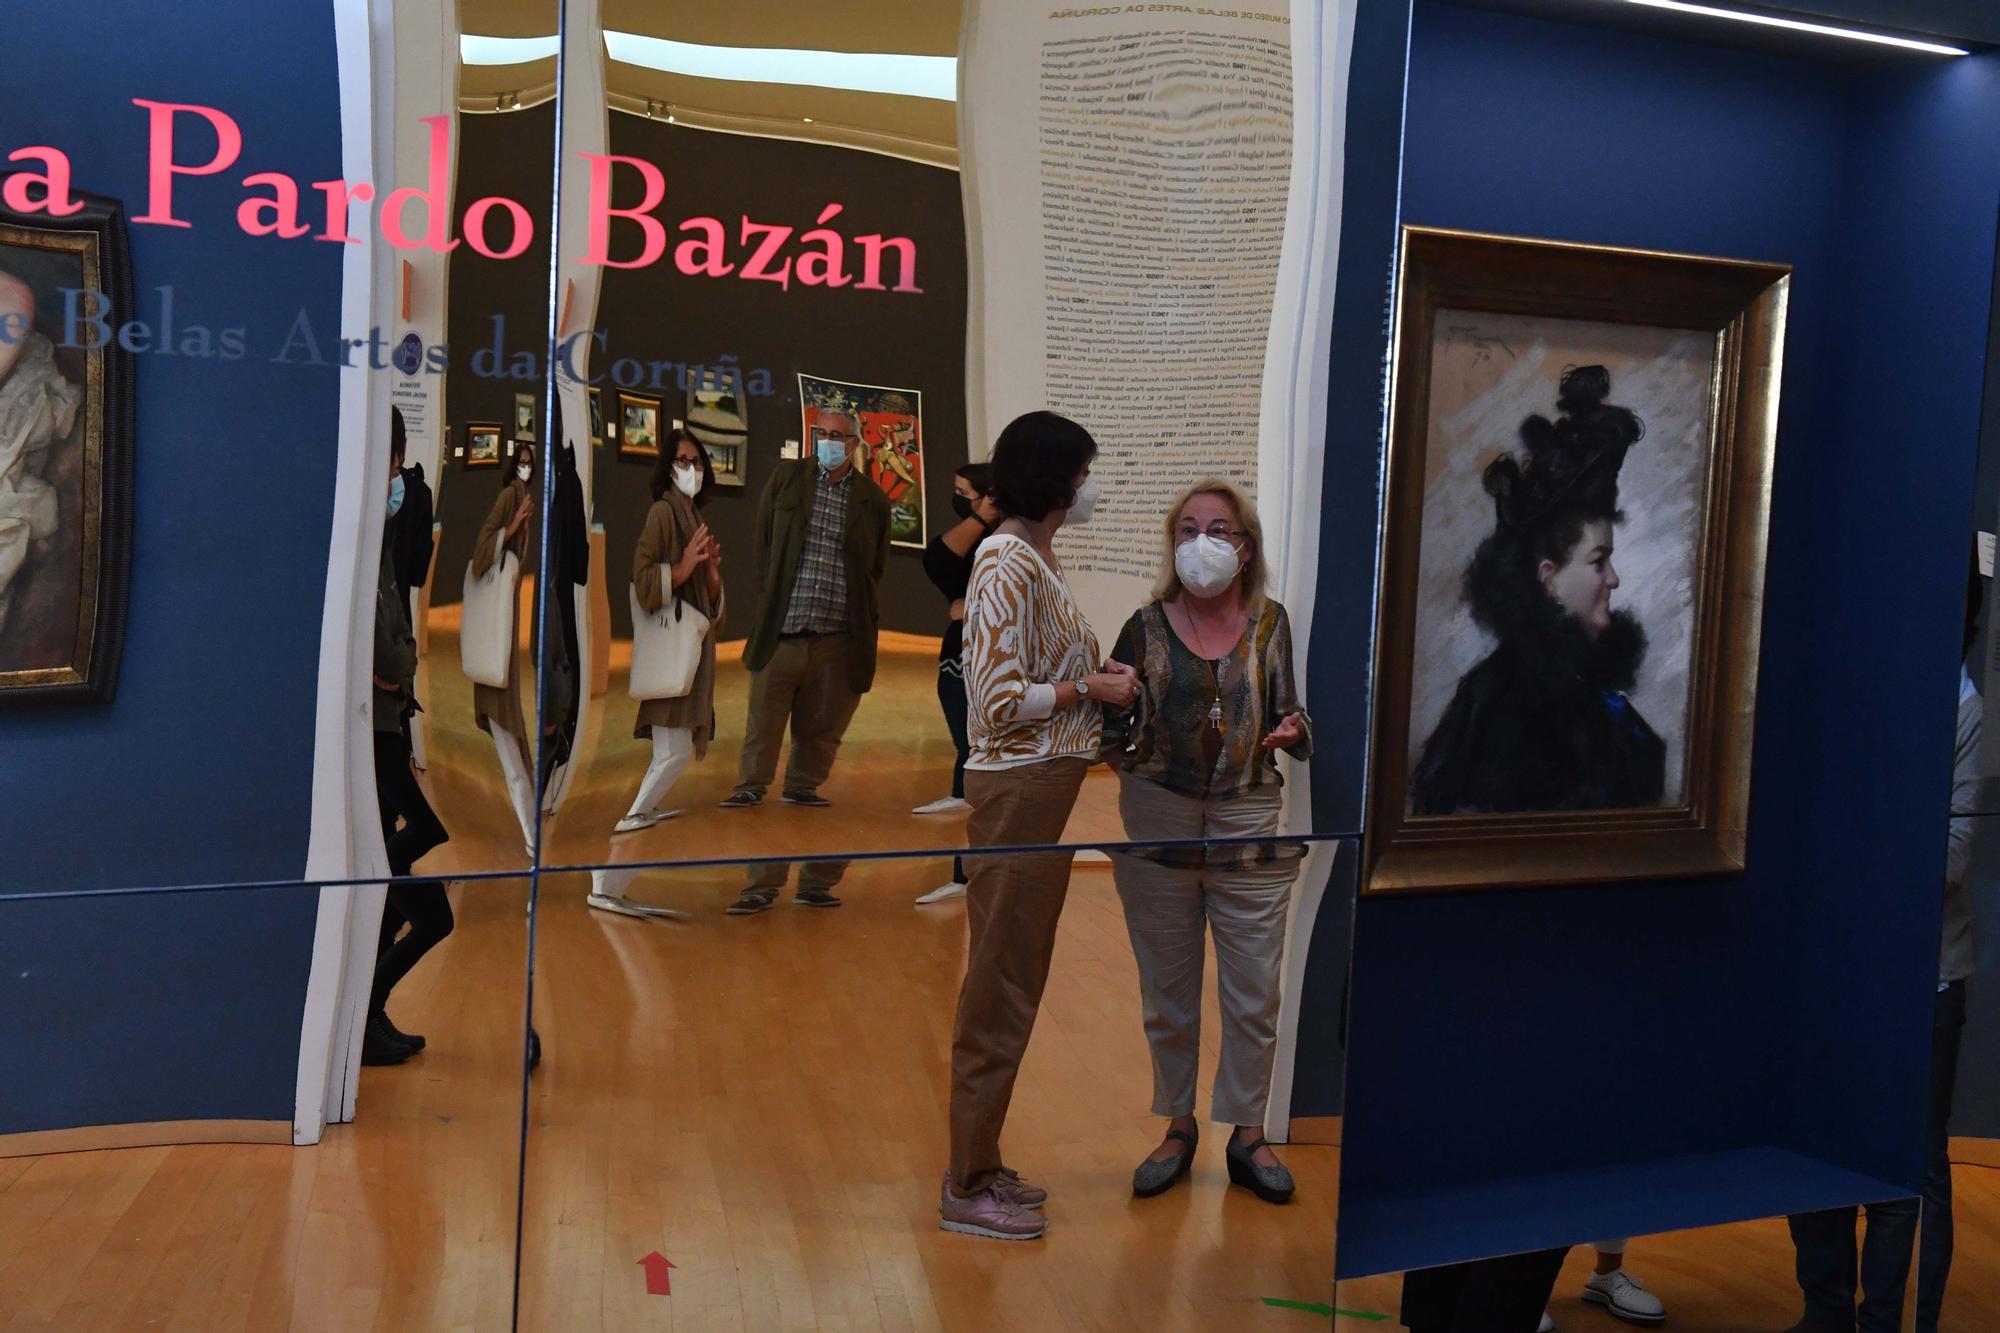 El legado de Pardo Bazán en el Museo de Belas Artes